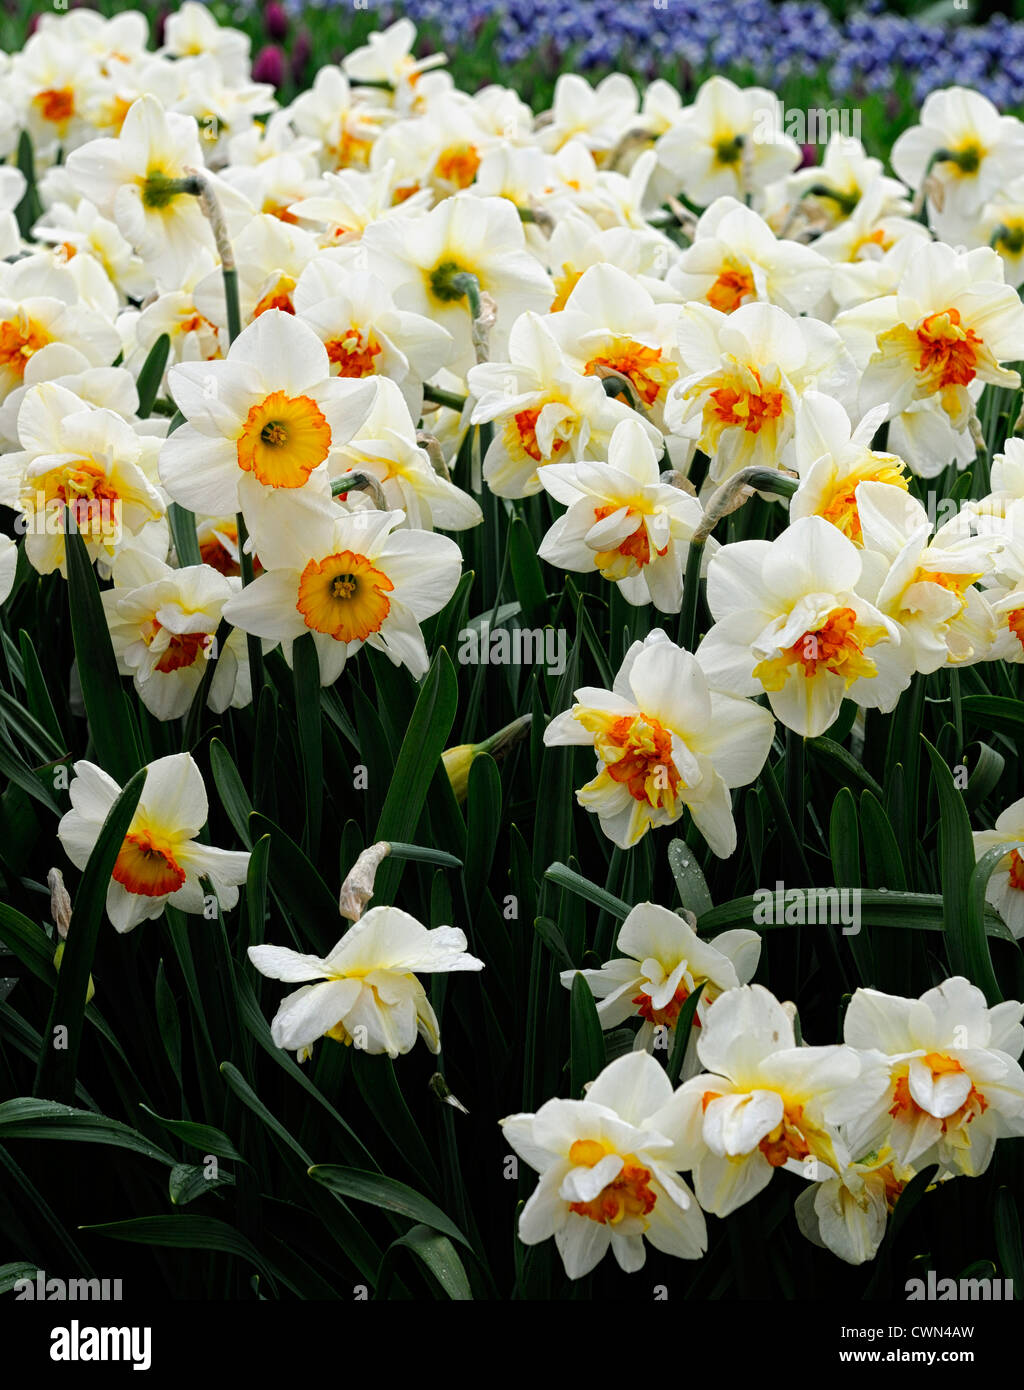 Fleurs de narcisses drift jaune orange blanc double fleurs jonquille  jonquilles narcisses bulbes à fleurs de printemps fleur Photo Stock - Alamy